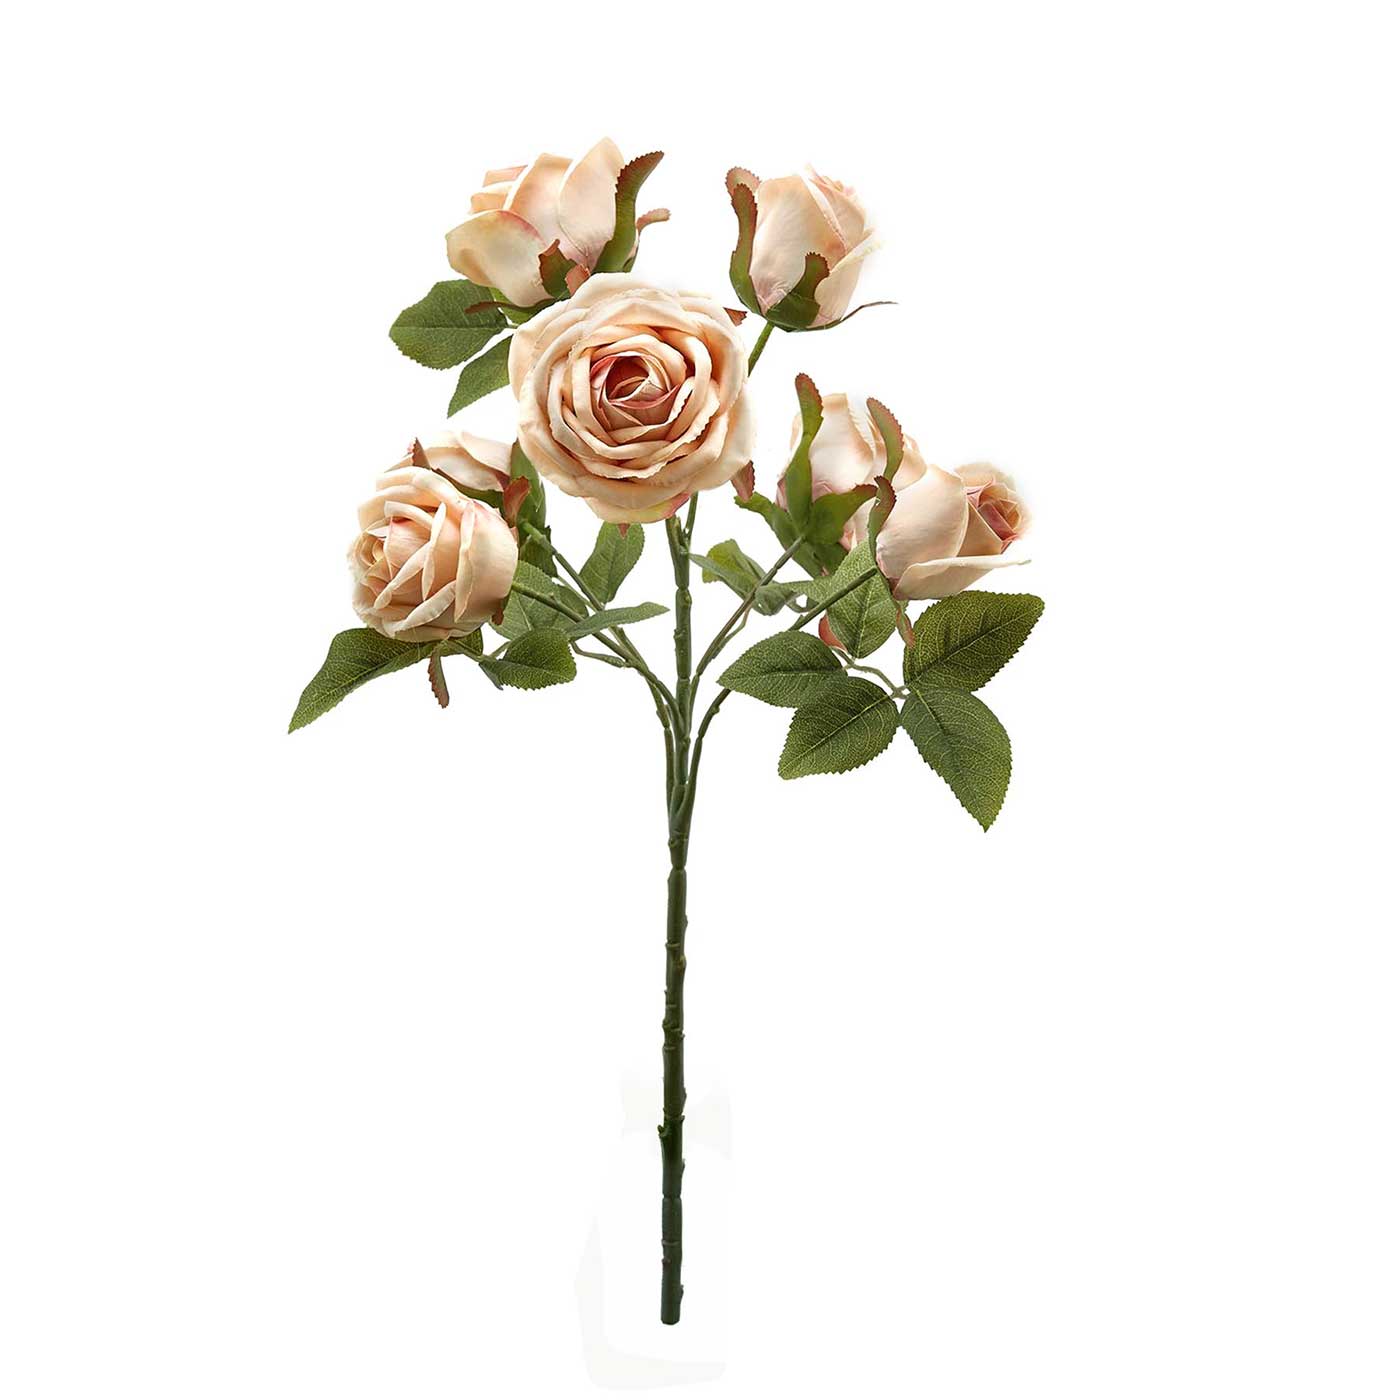 Bouquet 7 Rose Artificiali in Seta Stile Shabby Chic Colore Pesca